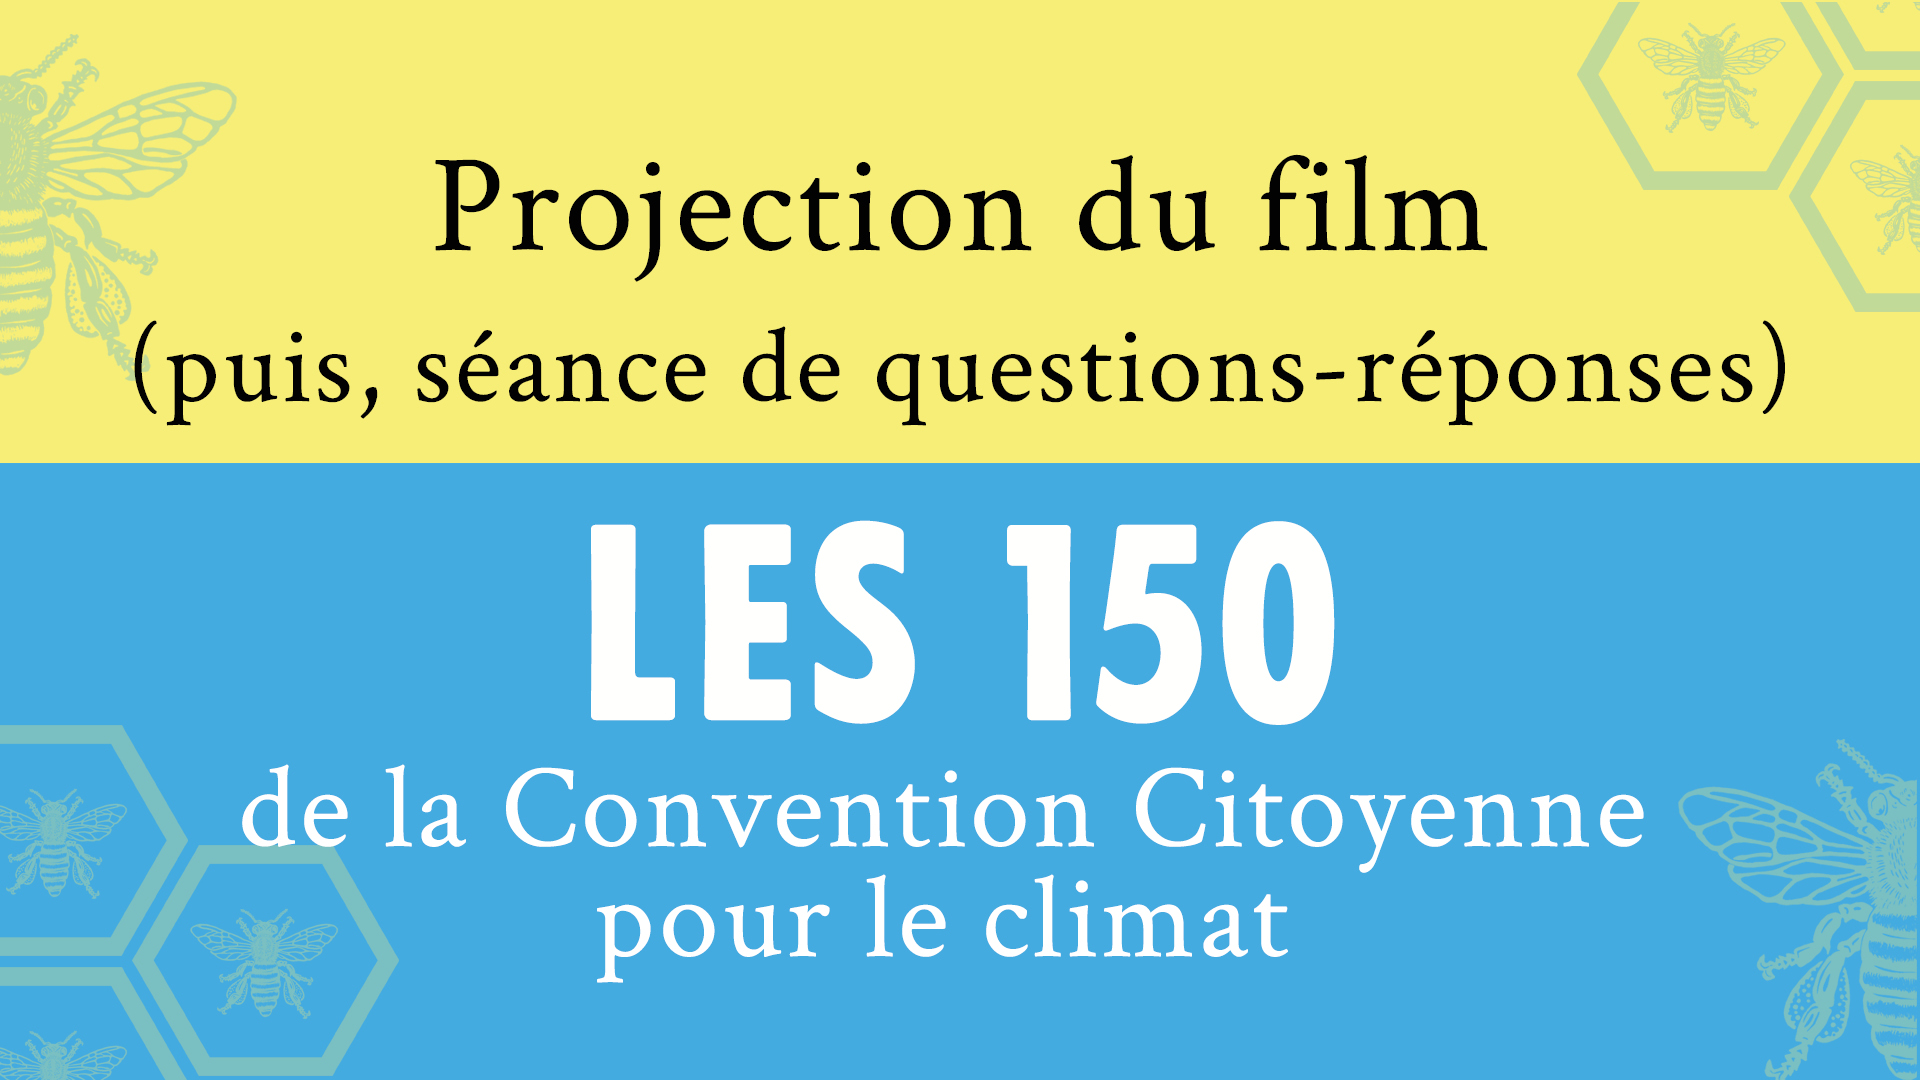 Projection du film : les 150 de la Convention Citoyenne pour le Climat